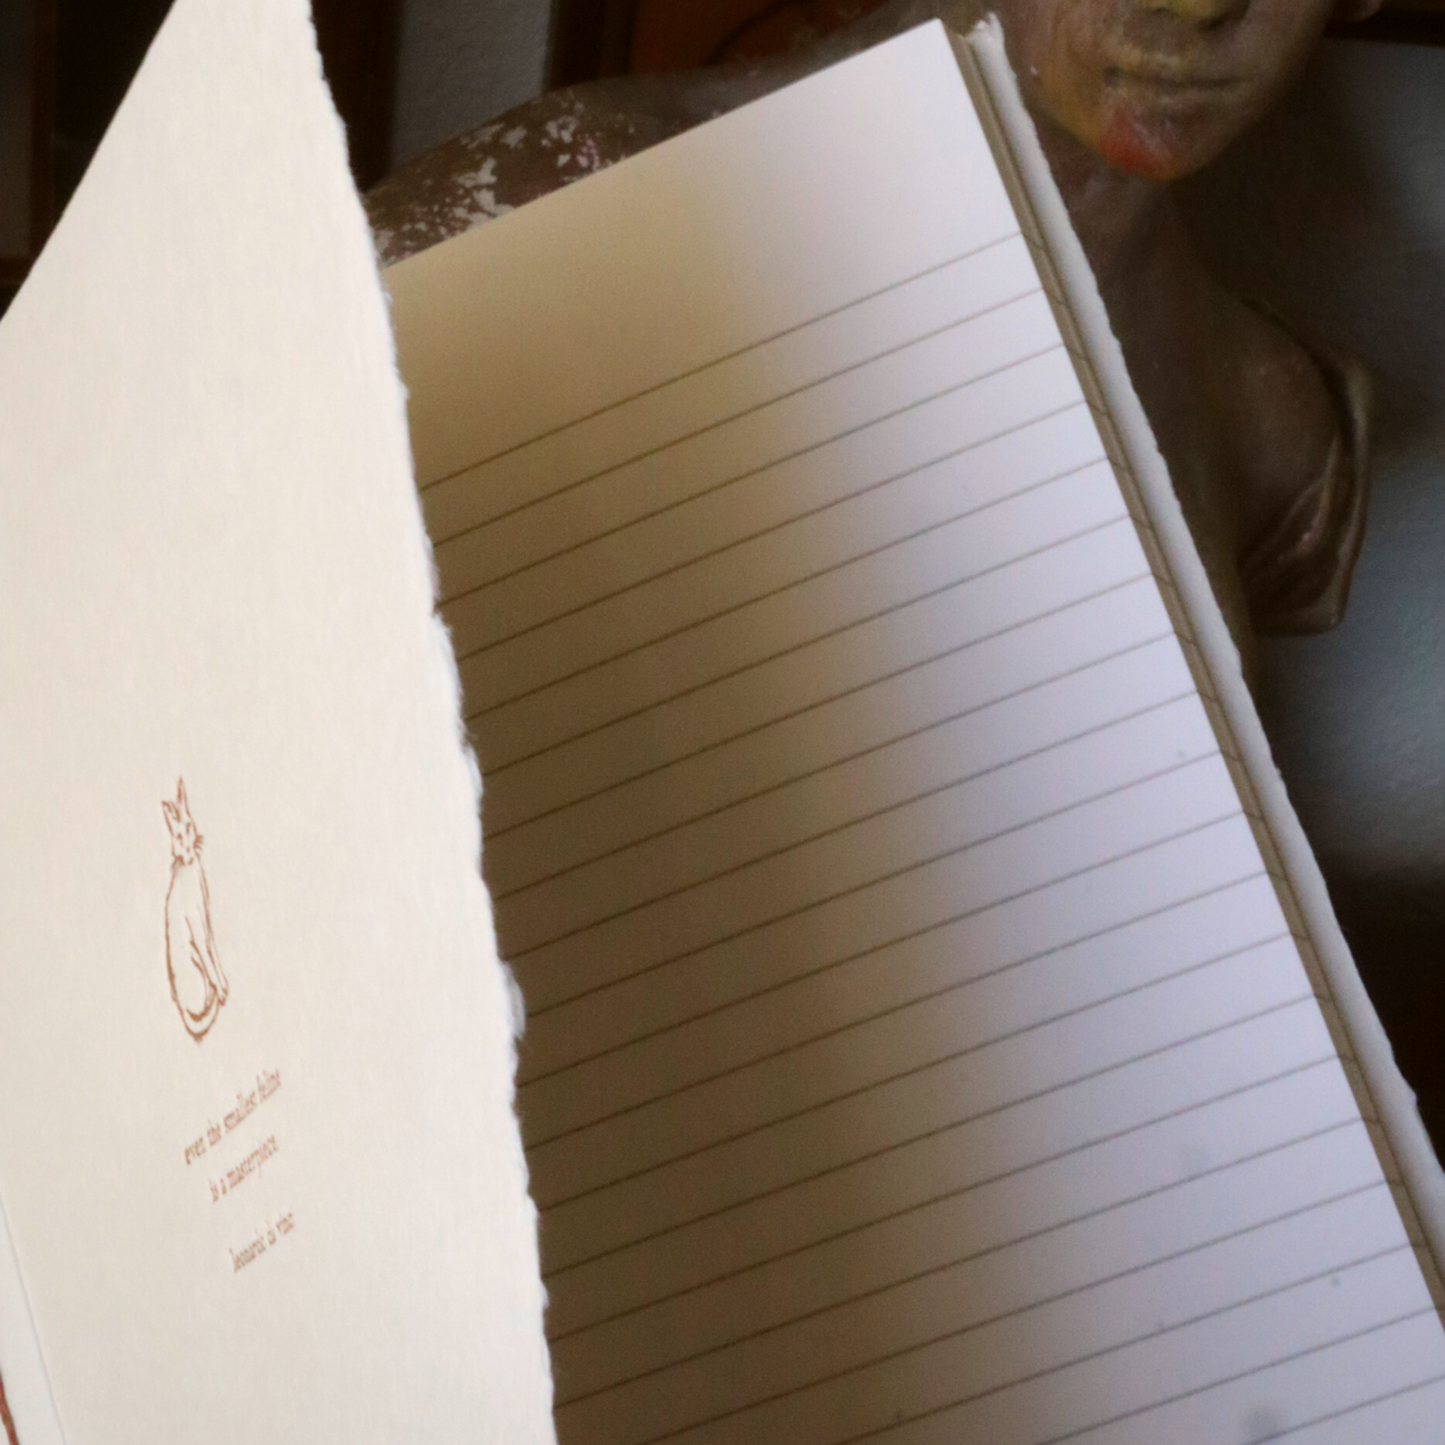 Leonardo Da Vinci Handmade Paper Journal